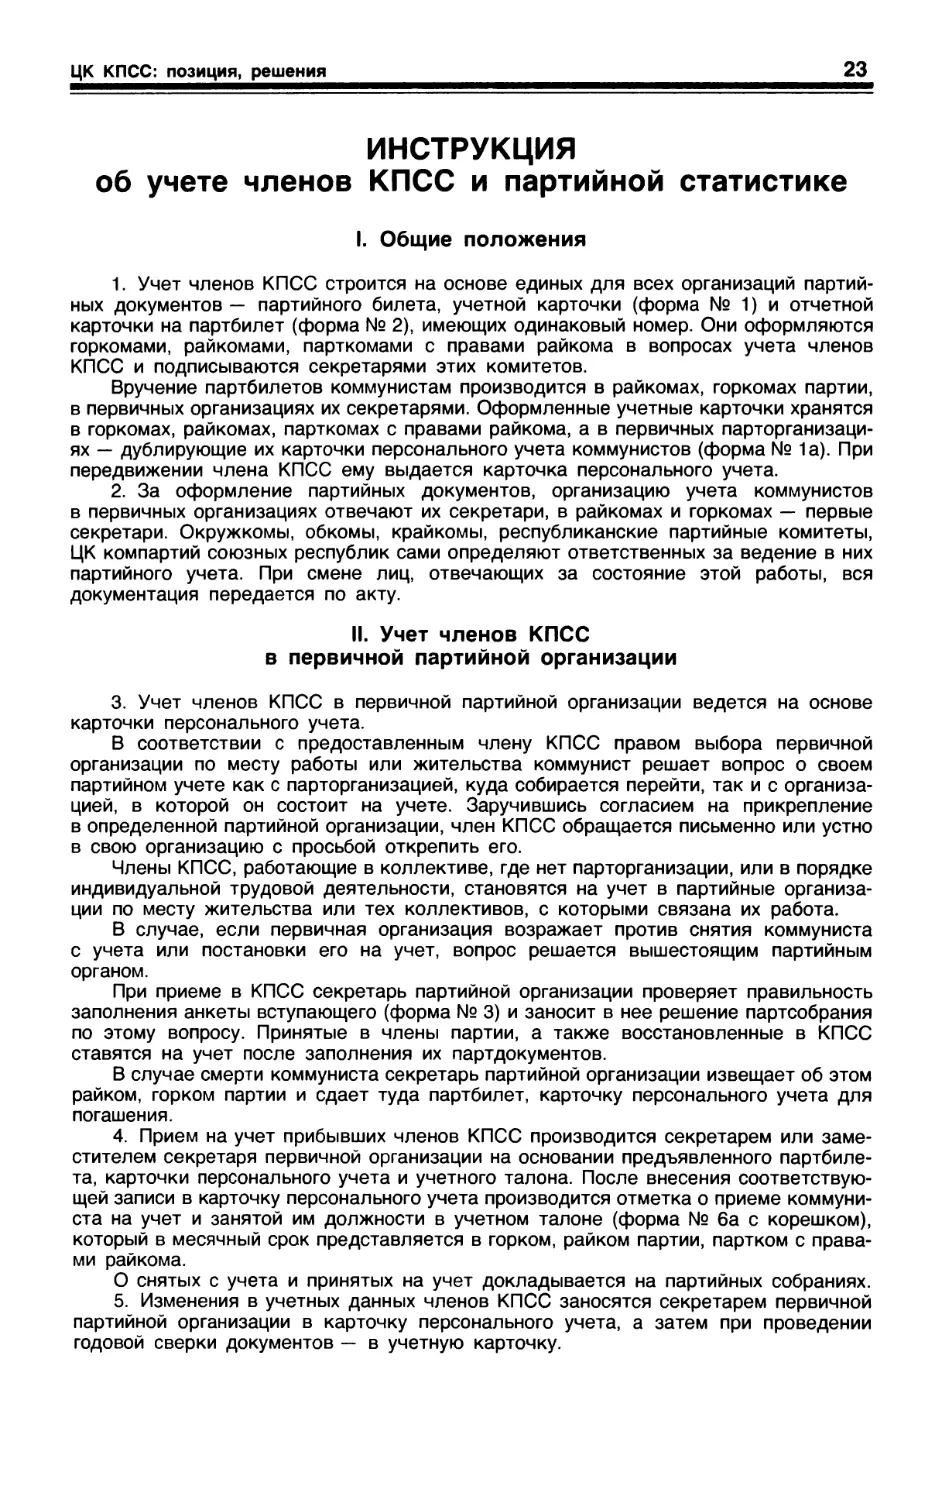 Инструкция об учете членов КПСС и партийной статистике